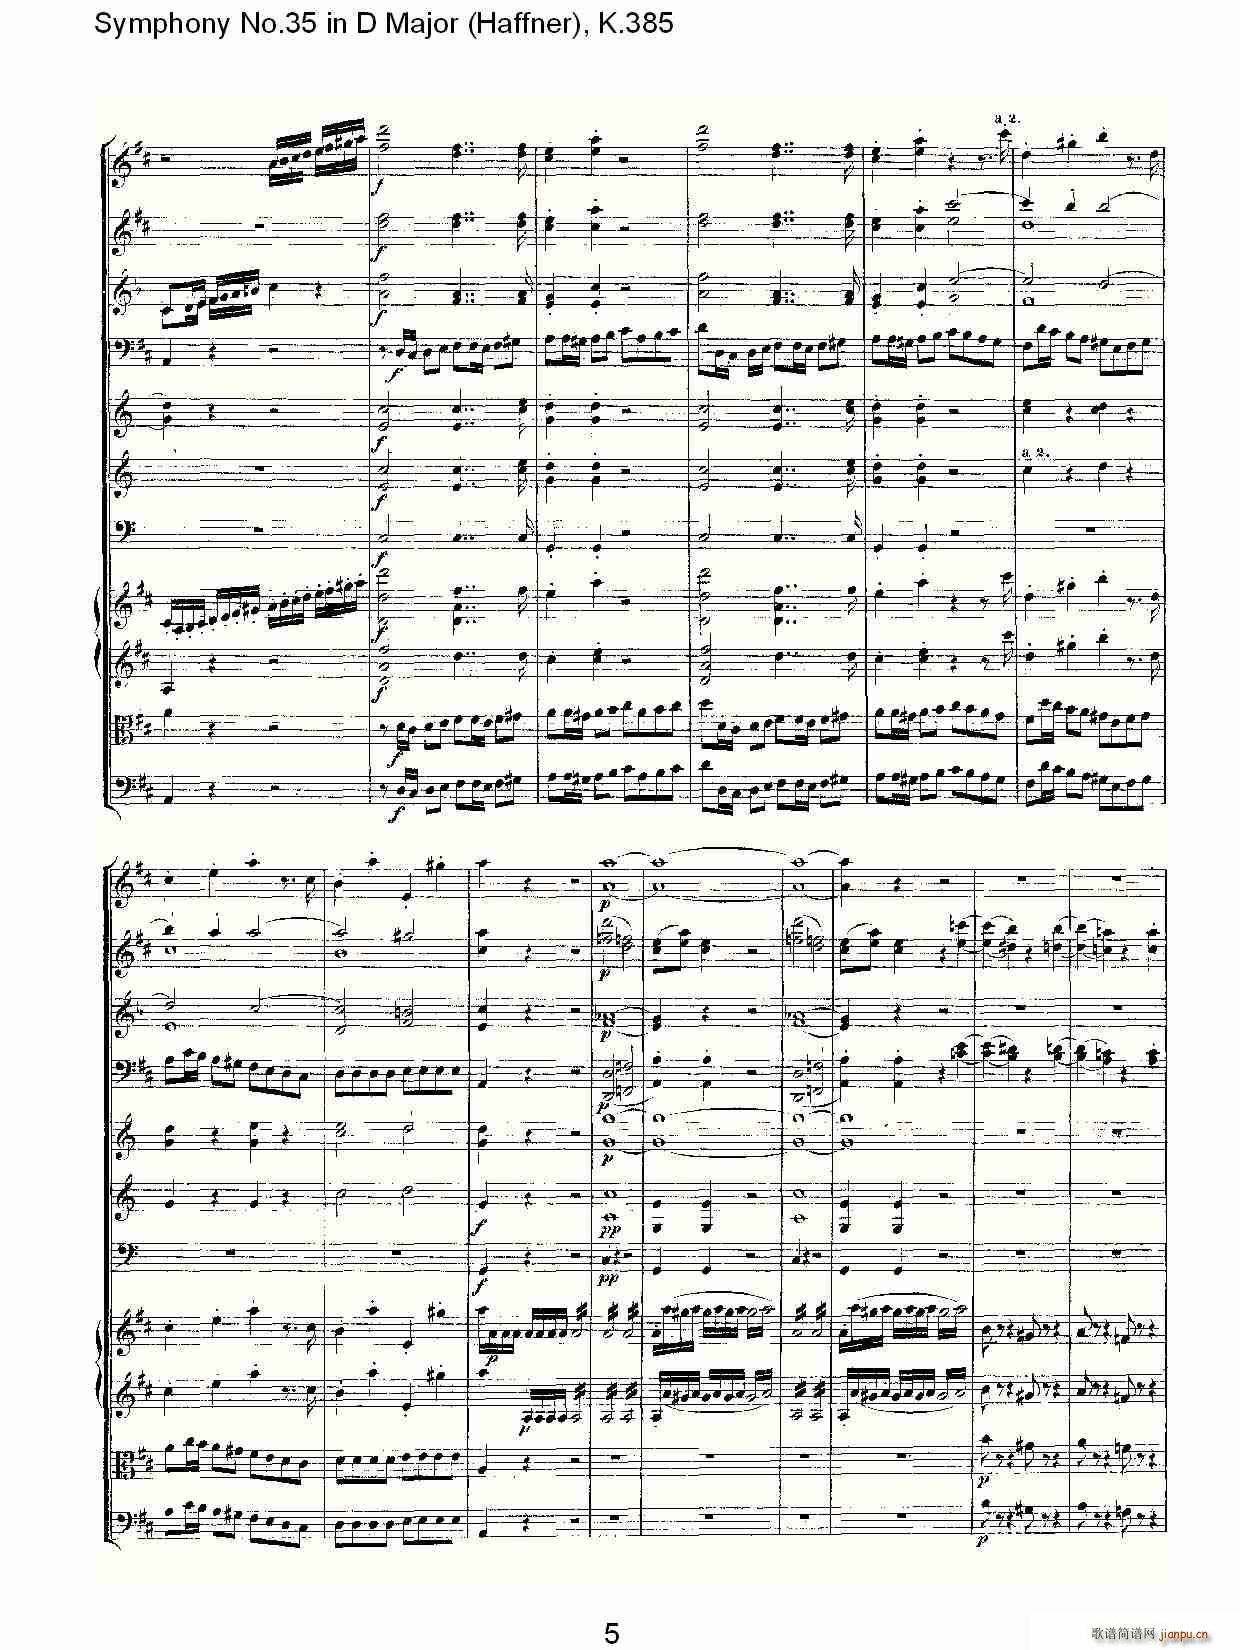 Symphony No.35 in D Major, K.385(ʮּ)5